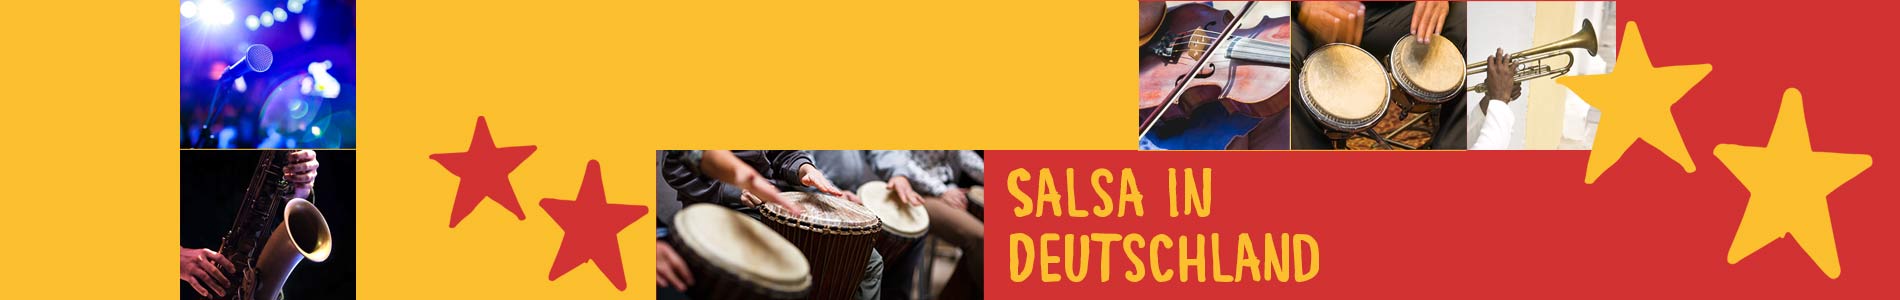 Salsa in Burgpreppach – Salsa lernen und tanzen, Tanzkurse, Partys, Veranstaltungen